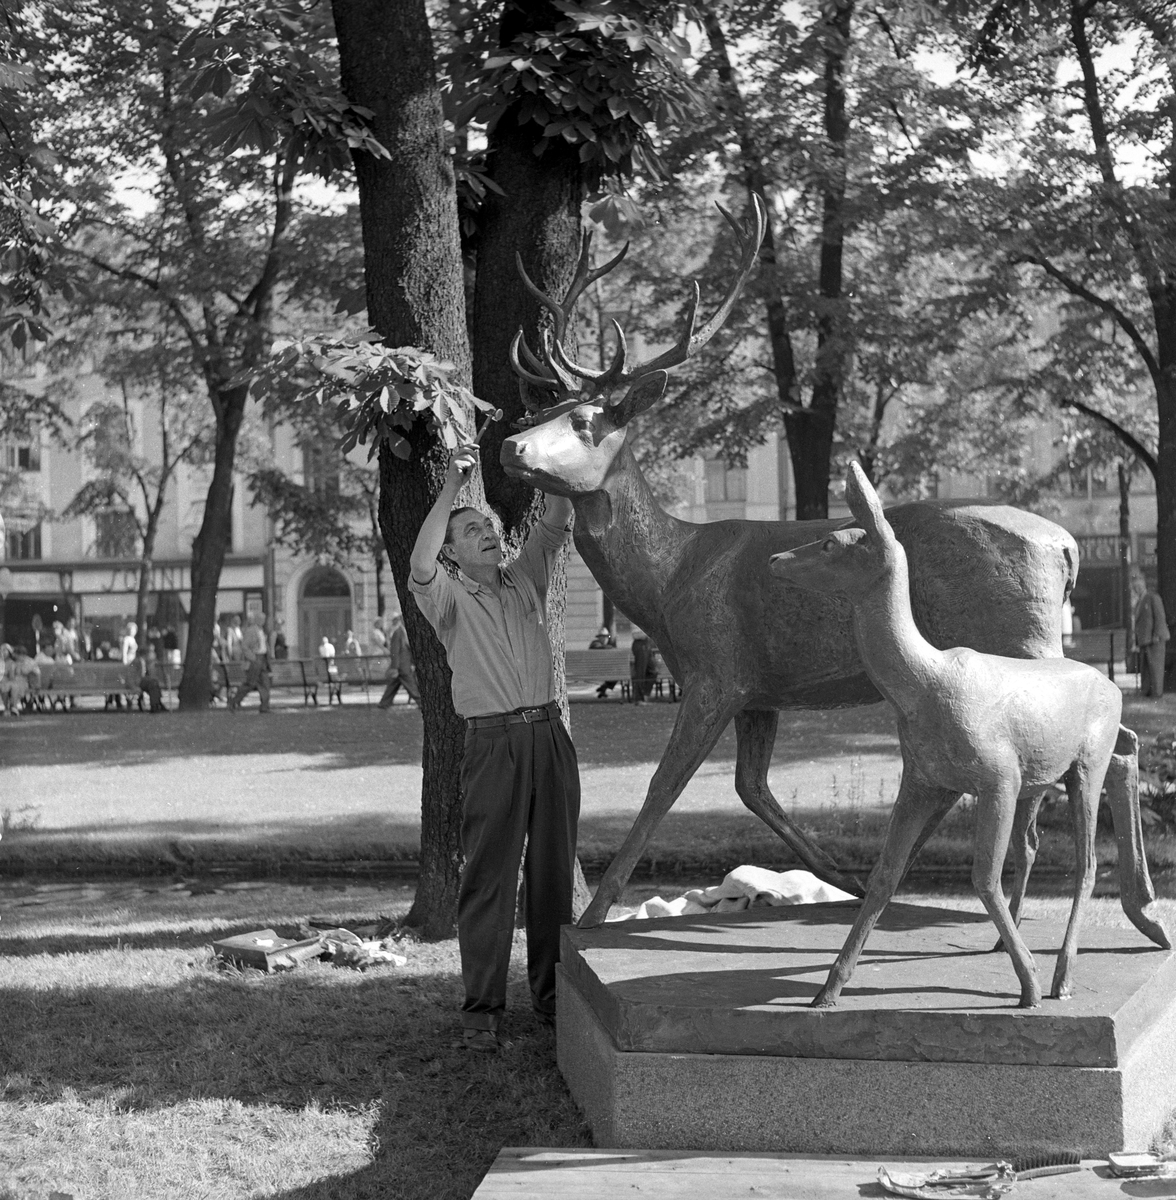 Serie. Siselør Mellin Olsen arbeider på billedhugger Arne Vigelands "Hjortegruppe" på Eidsvolls plass i Oslo. Fotografert juli 1958.

